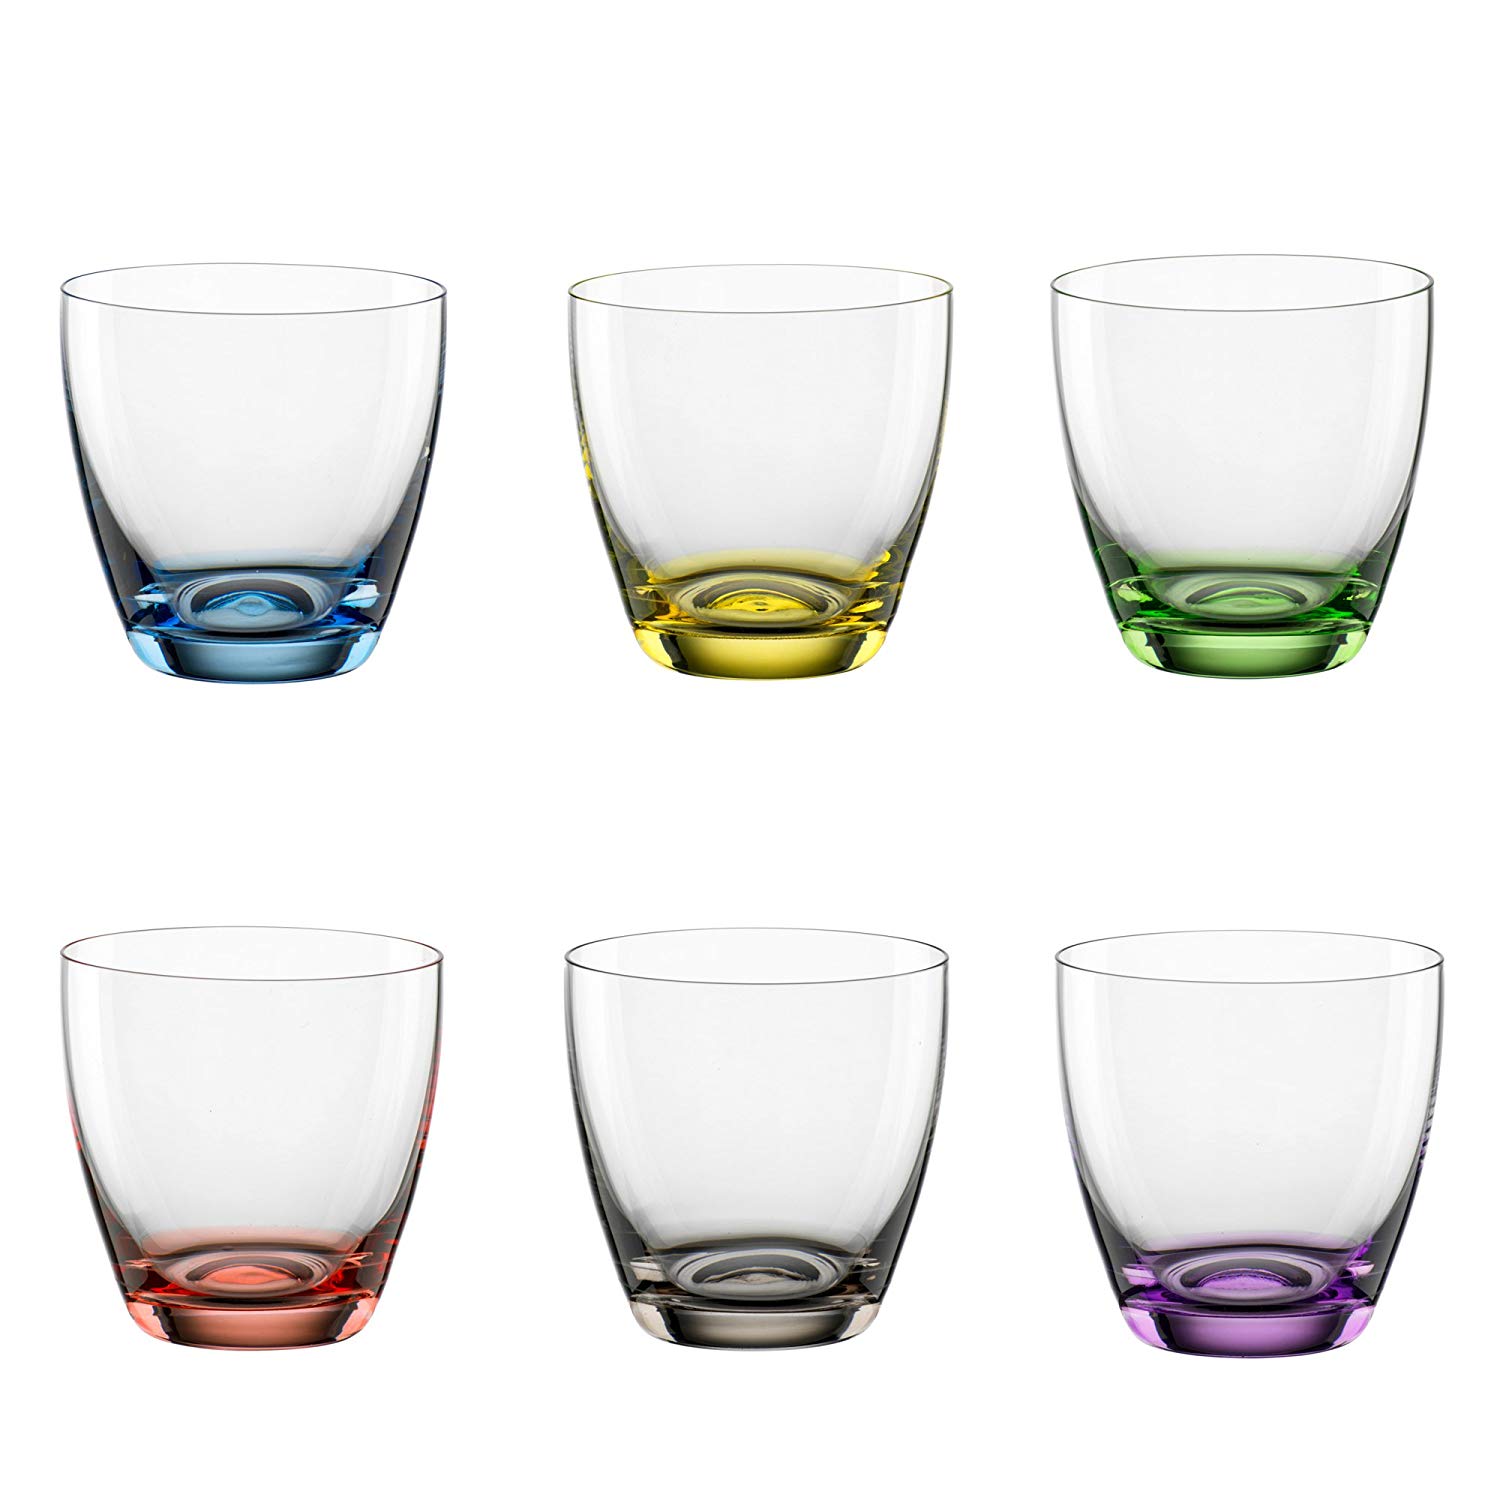 Bohemia Cristal Viva Colori 093 006 165 Set Of 6 Glasses 10Oz With Colourfu